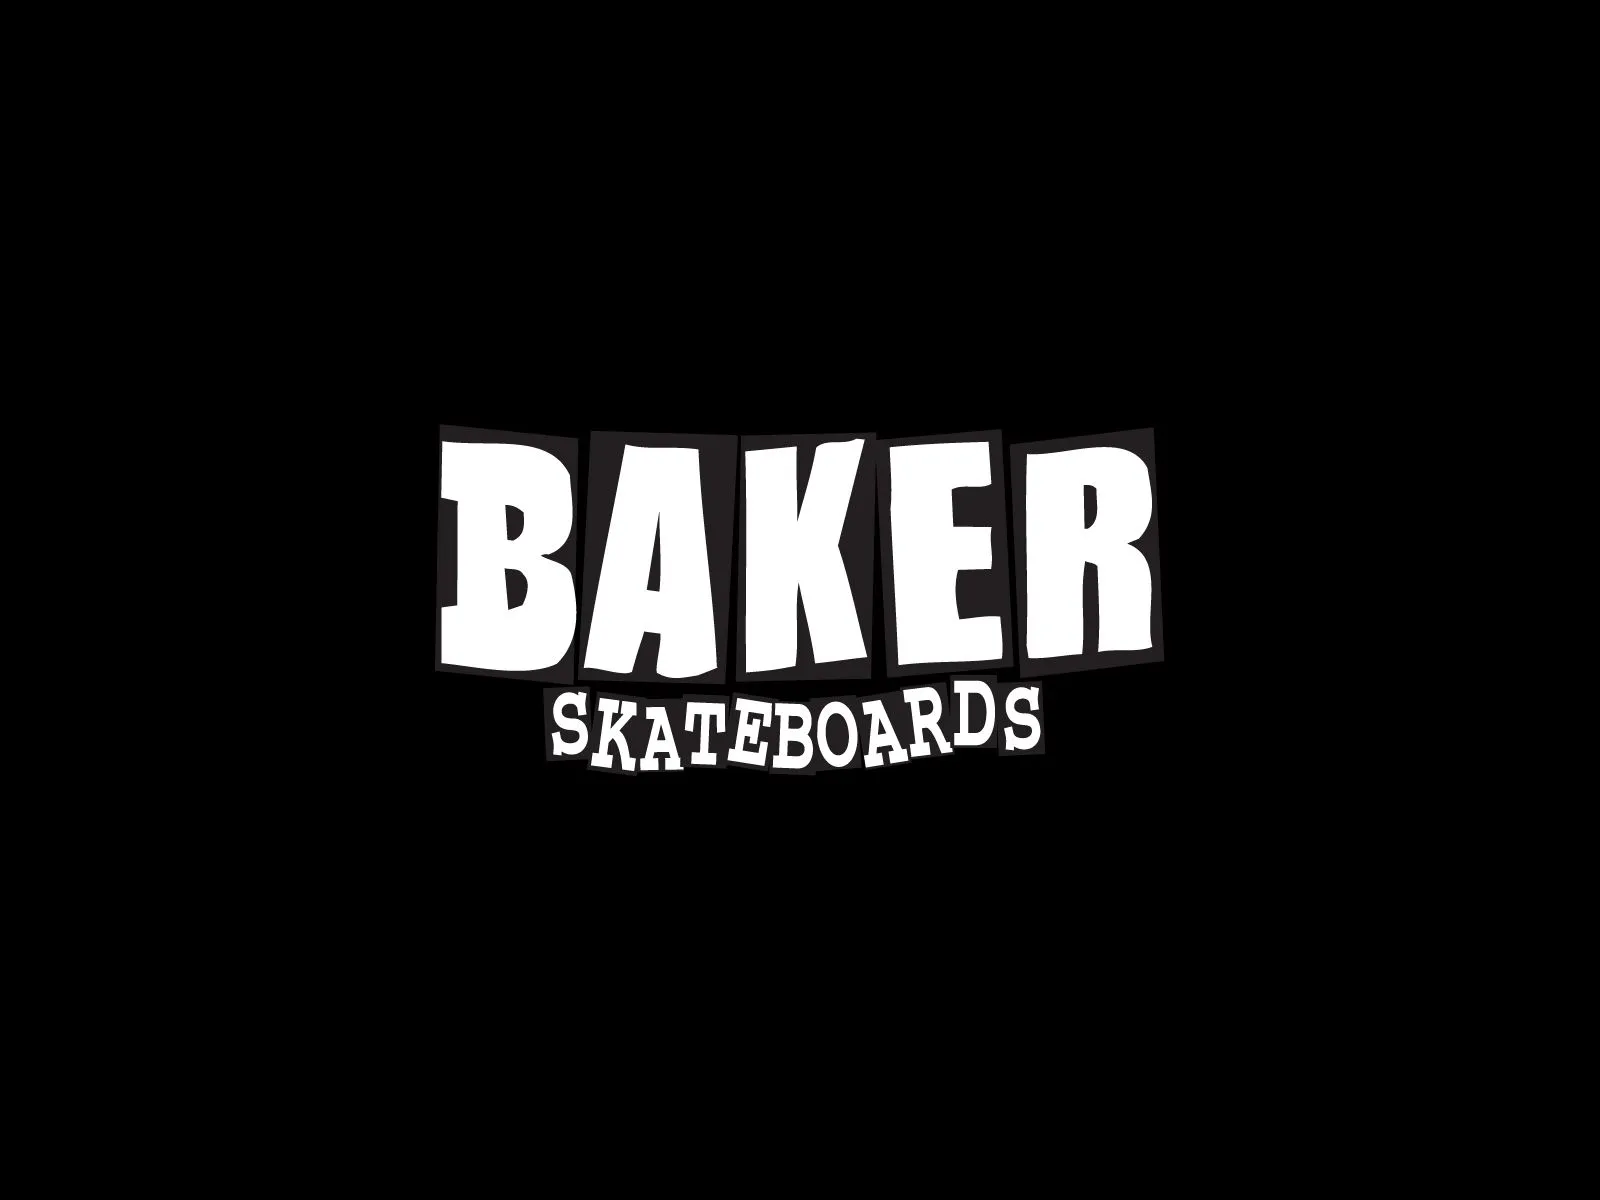 Skateboarding logos | Skateboarding wallpapers, skateboard ...